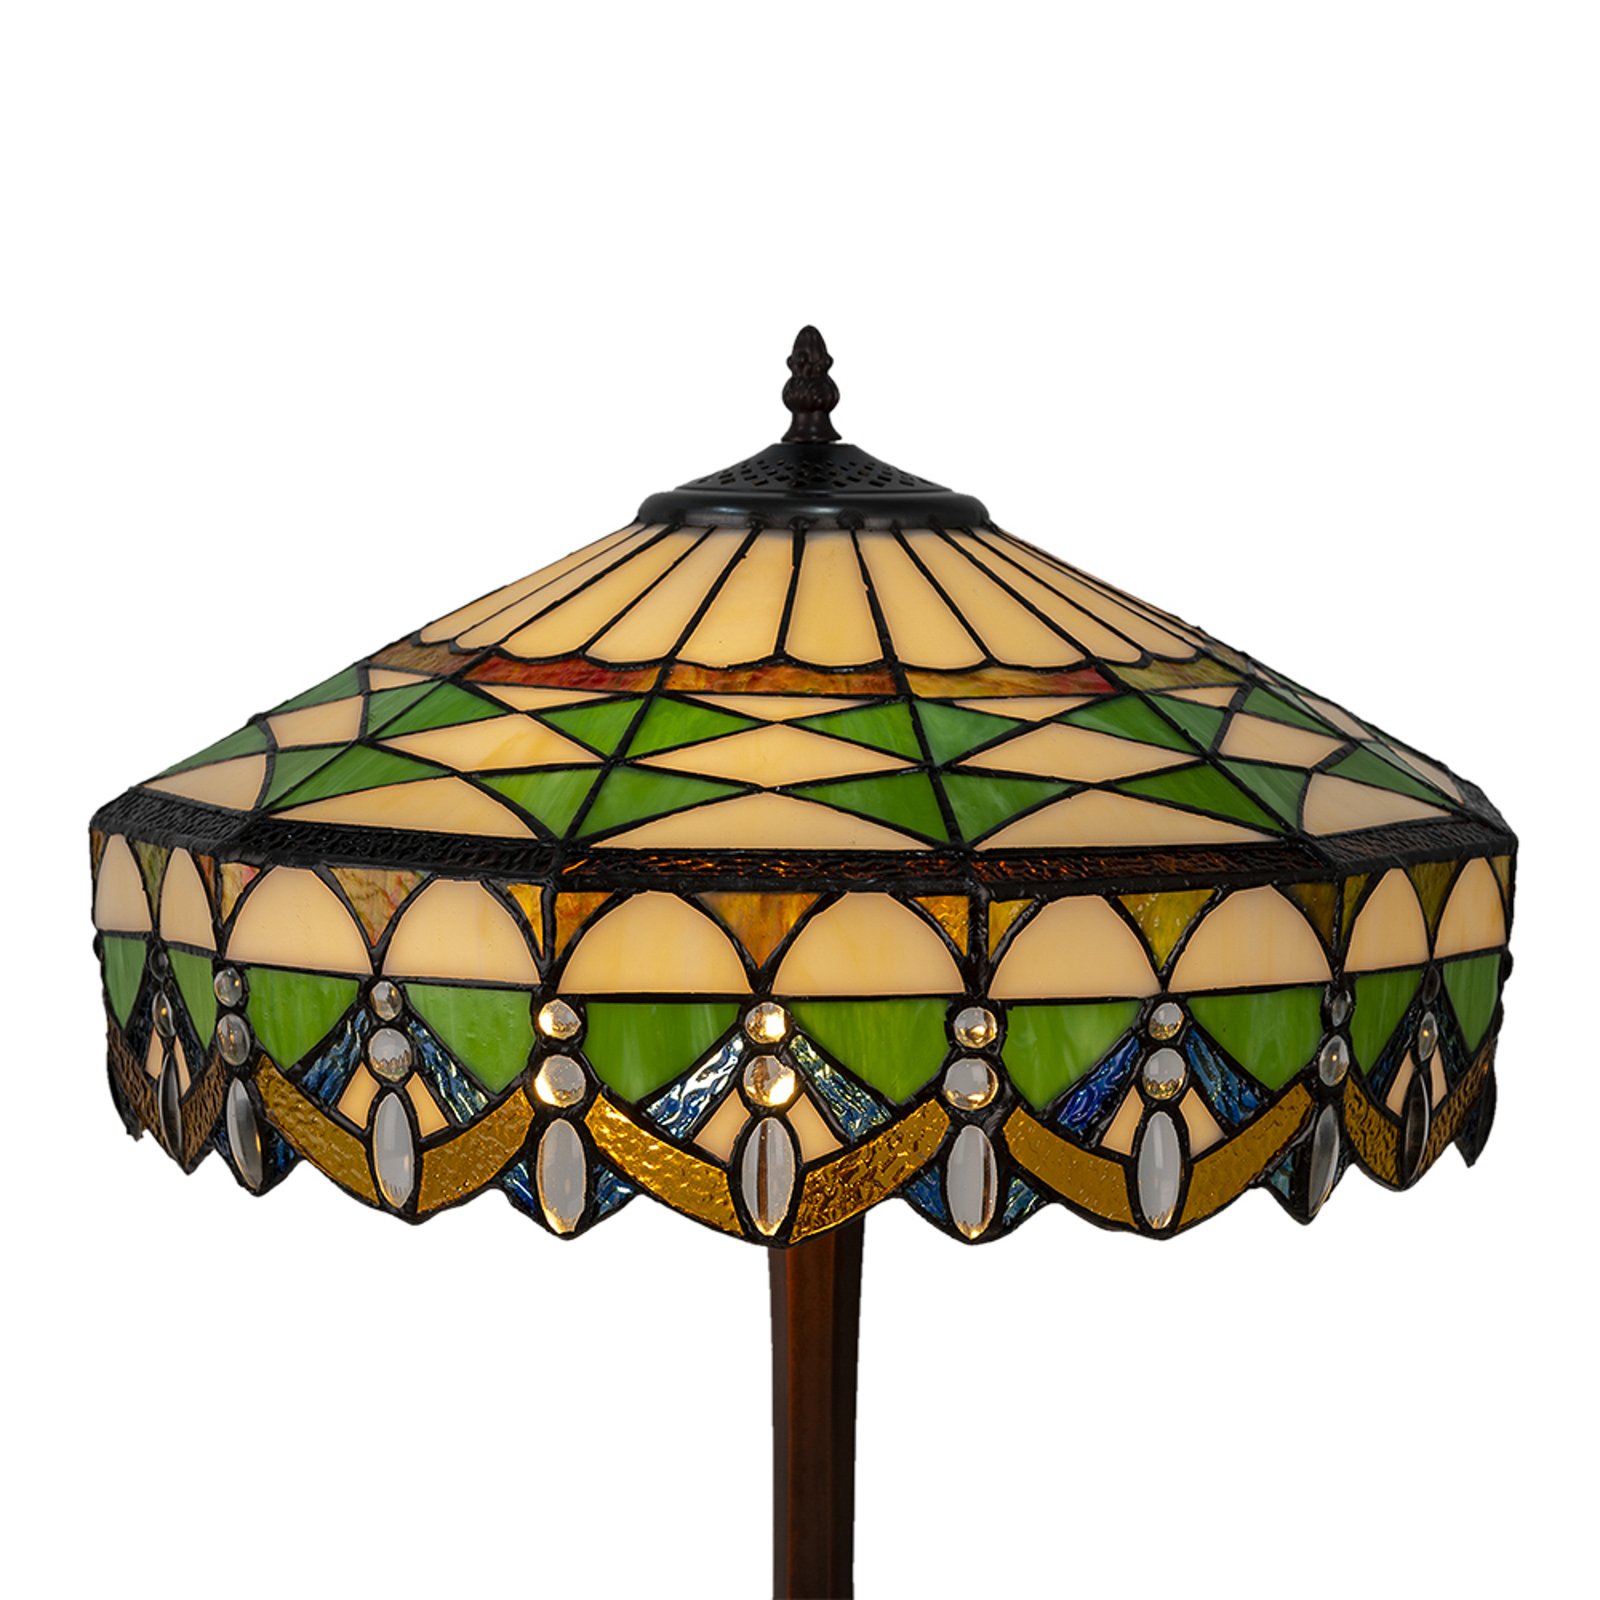 Lampa stołowa 5LL-6086 zielona, w stylu Tiffany